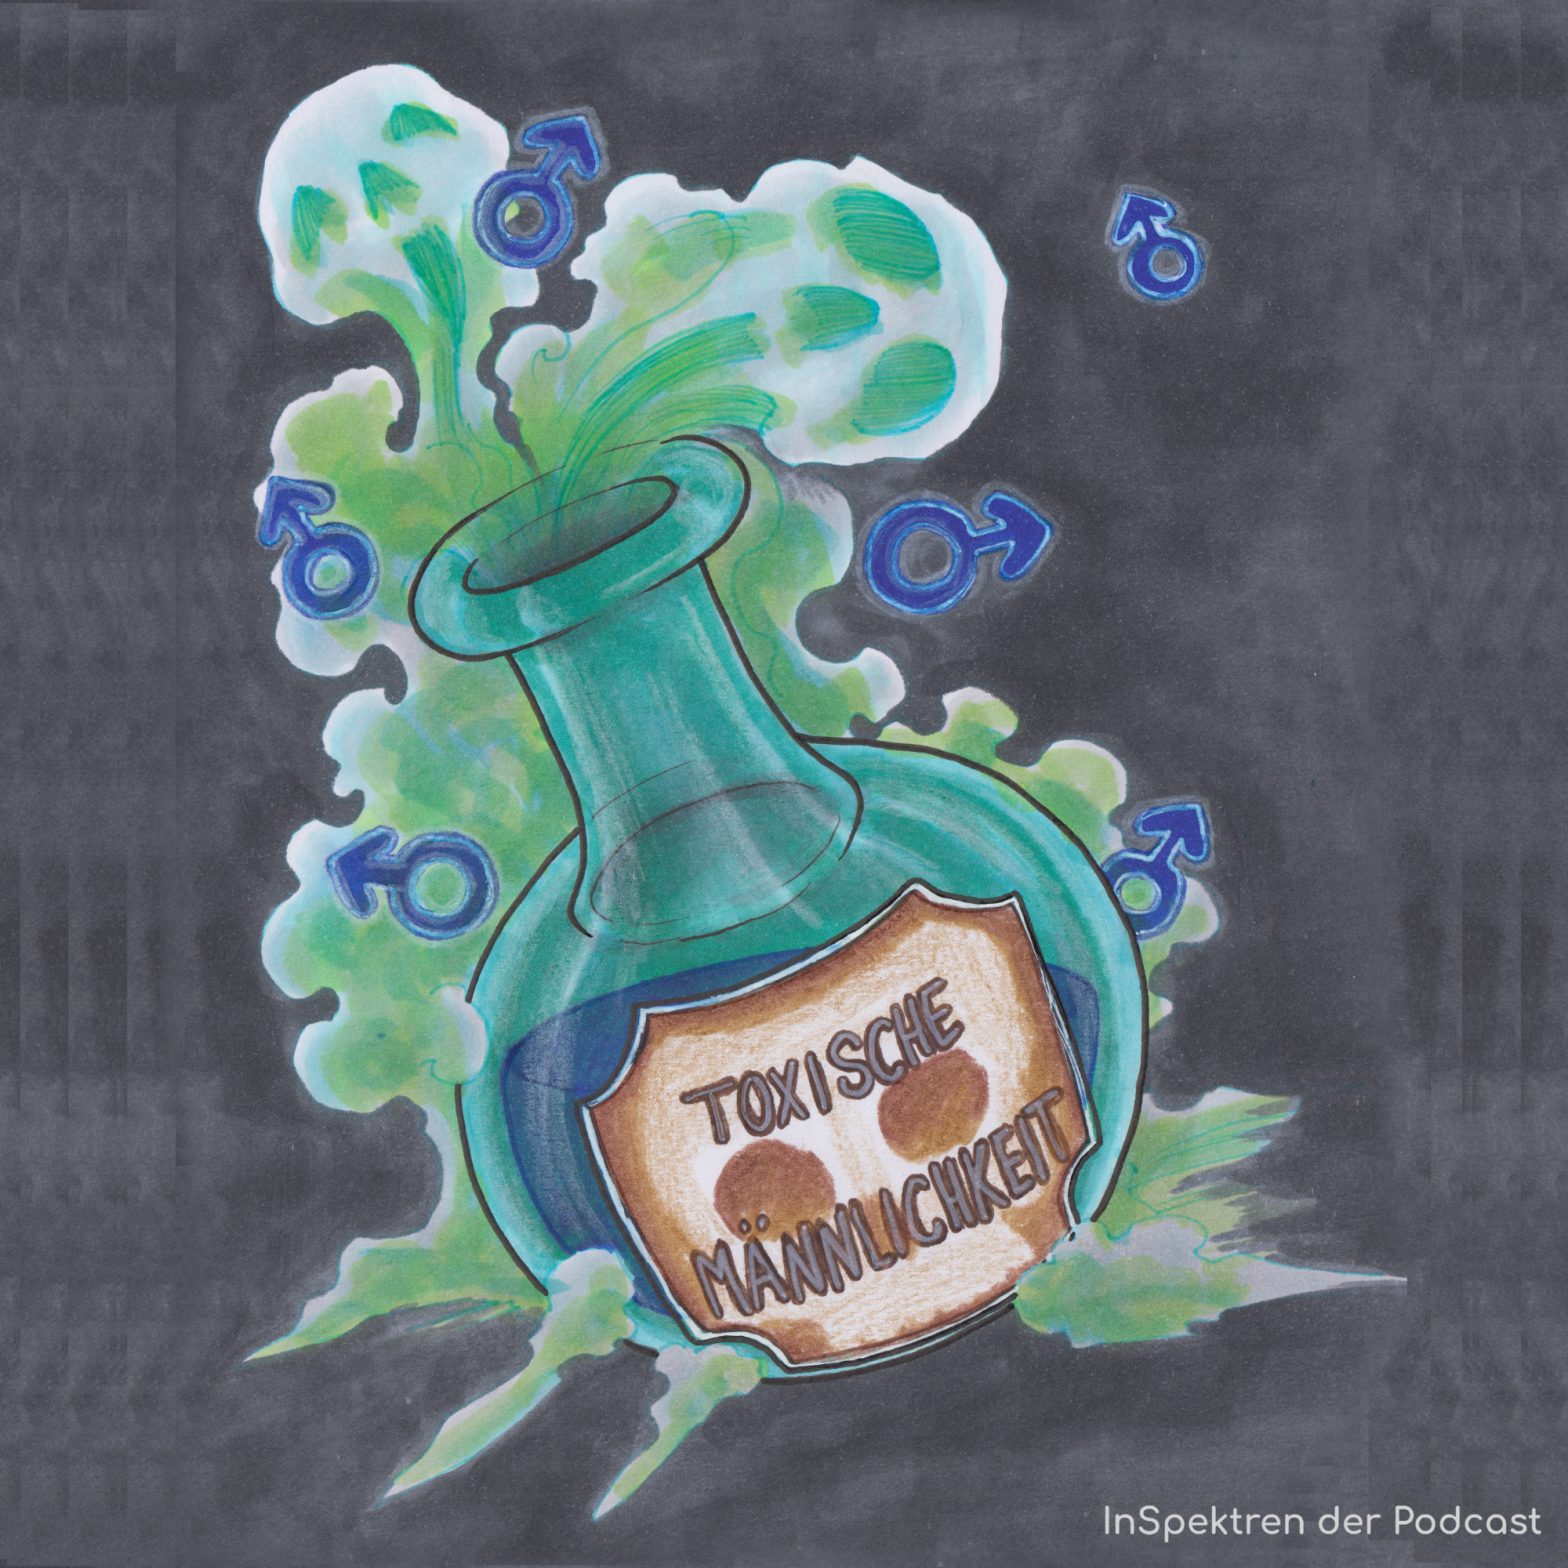 Das Bild zeigt eine bauchige Grünblaue Flasche vor grauem Hintergrund. Aus der Flasche strömt grüner Rauch, in dem einige blaue Marssymbole zu sehen sind. In der Flasche ist blaue Flüssigkeit zu sehen und auf ihr klebt ein braunes Etikett auf dem die schematische Form eines Totenkopfes zu sehen ist. Darauf steht: "Toxische Männlichkeit".